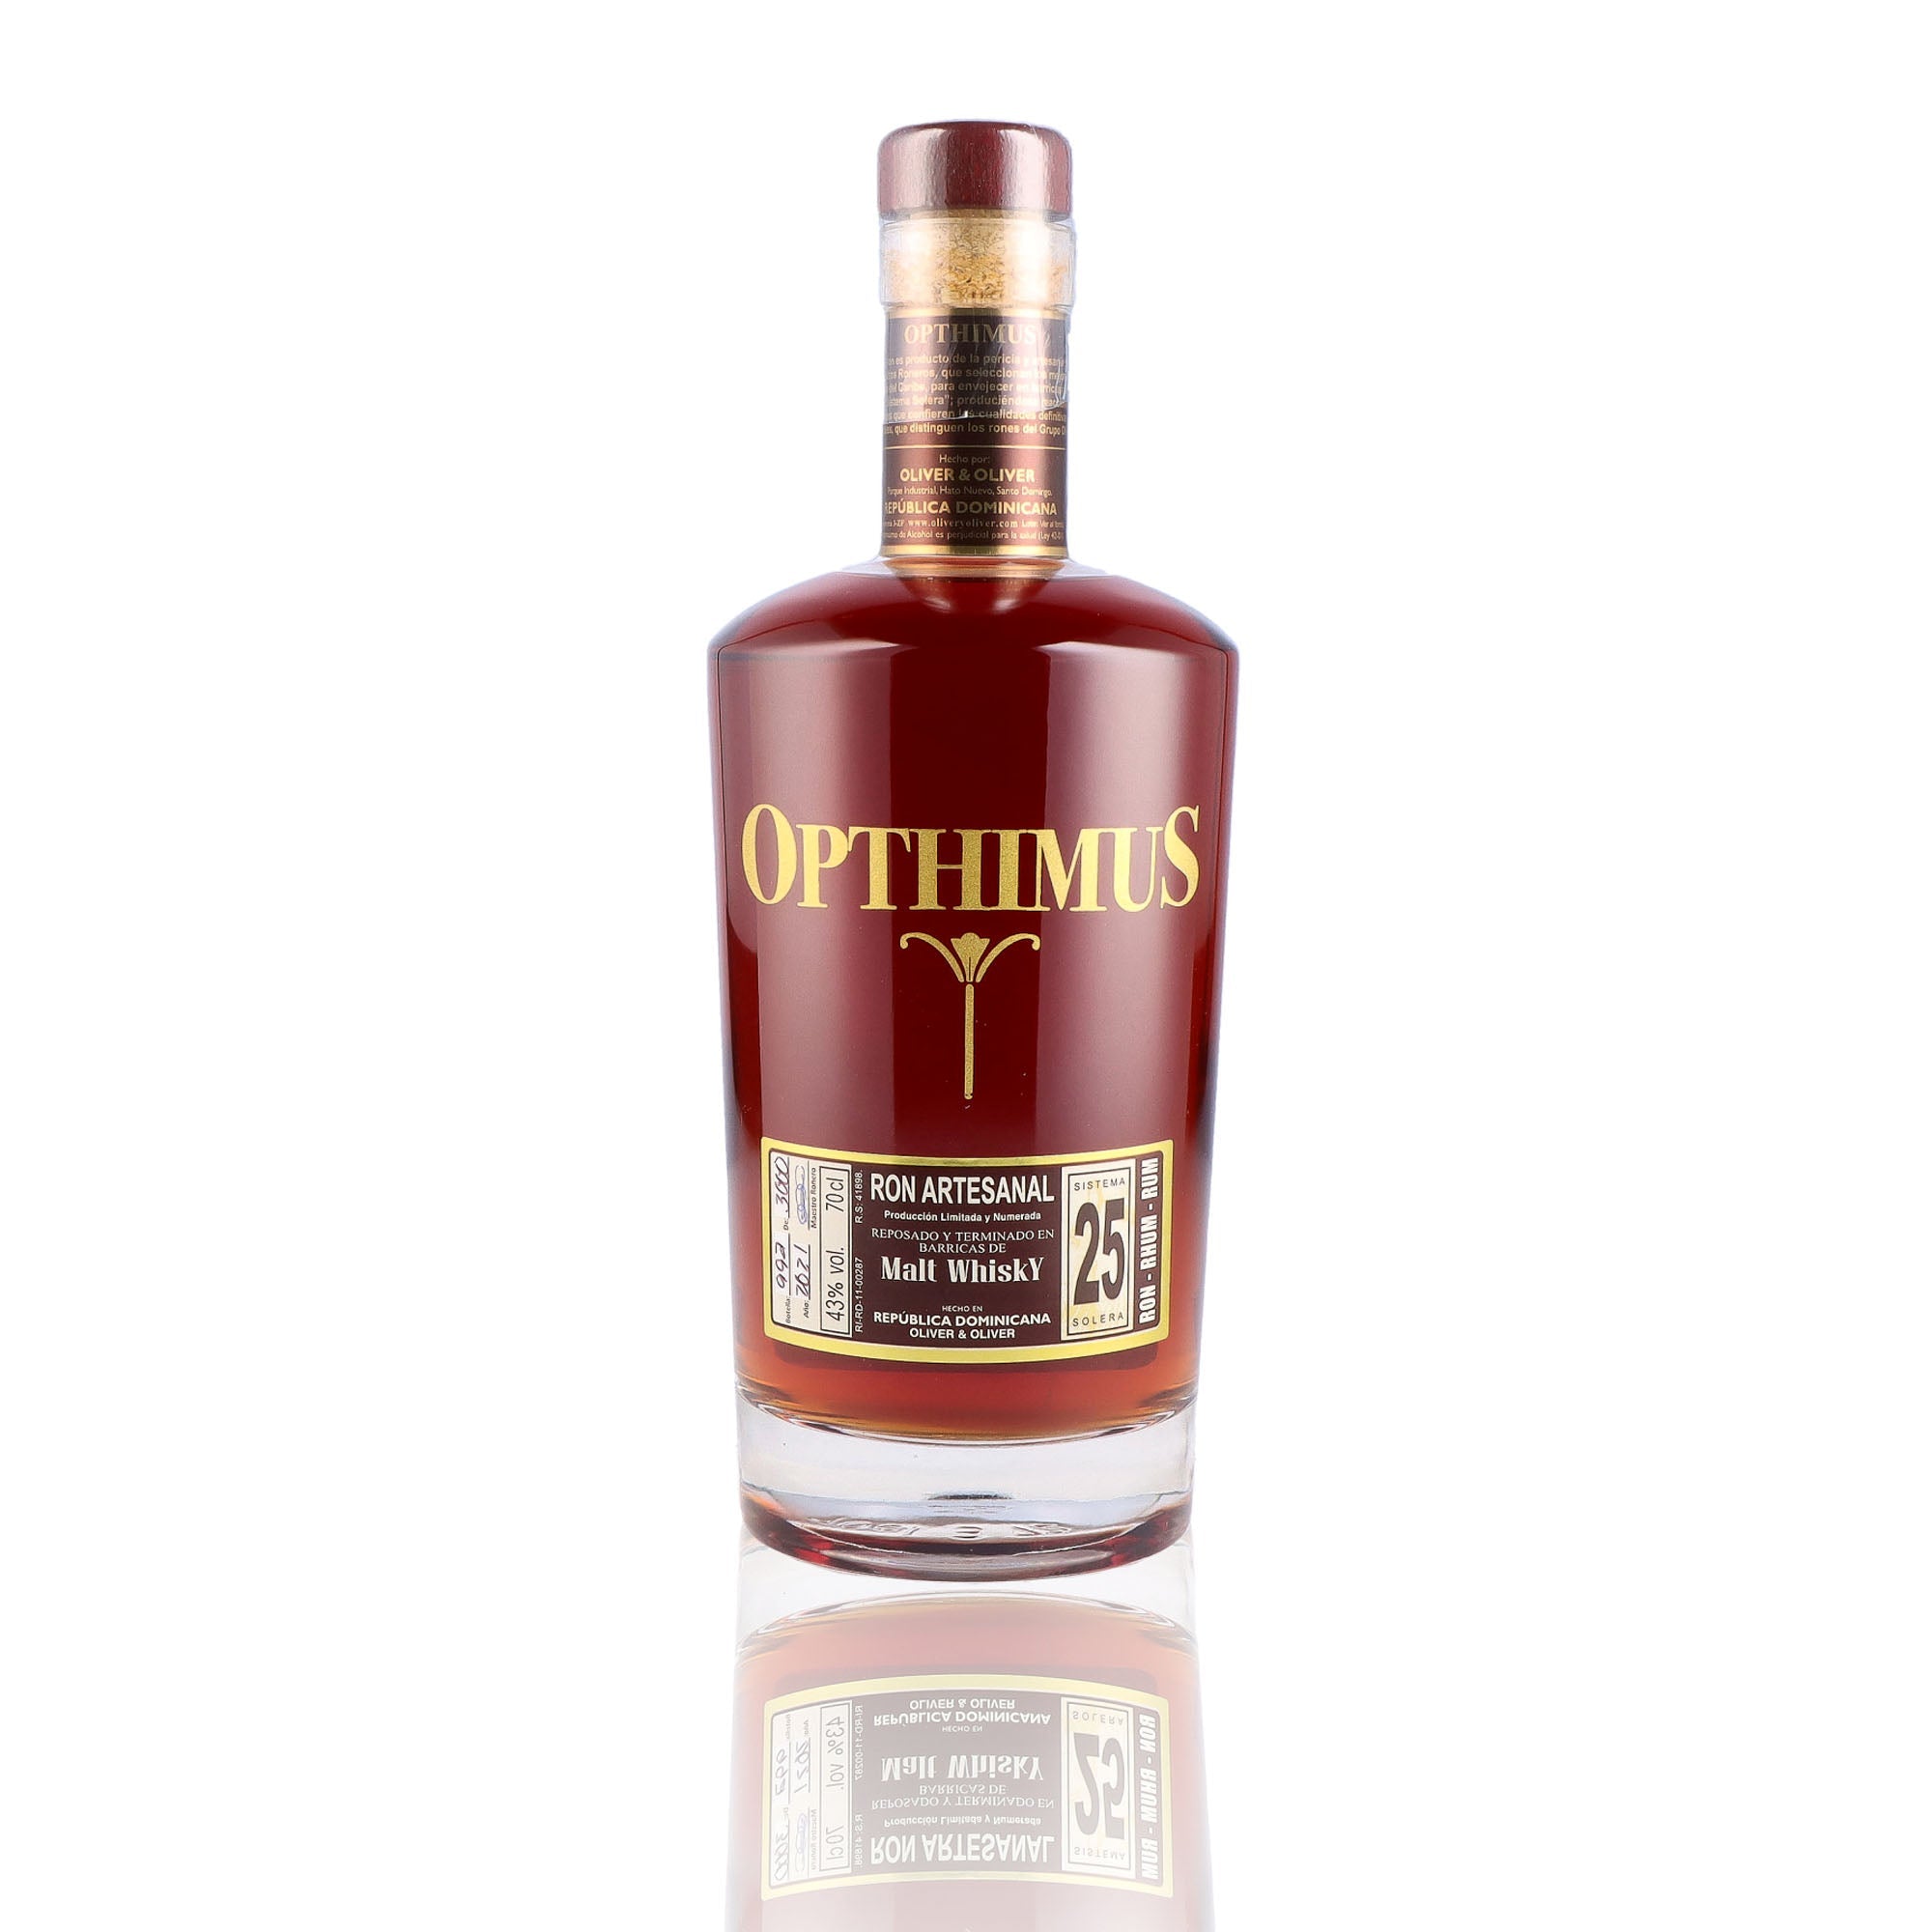 Une bouteille de rhum vieux, de la marque Opthimus, nommée finition single malt, 25 ans d'âge.